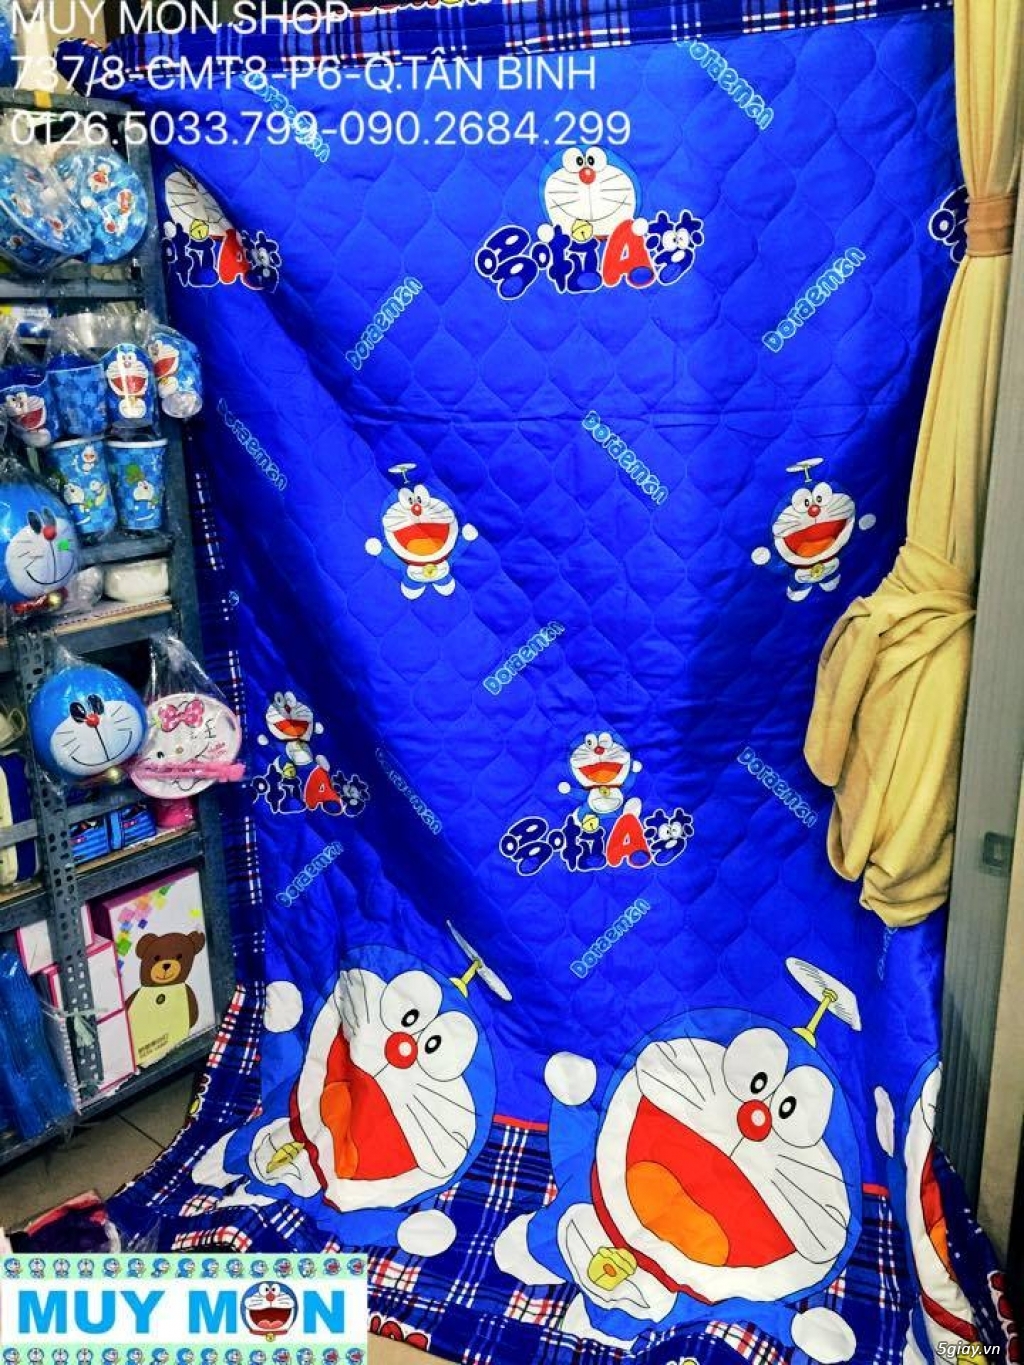 [MUY MON SHOP] Chuyên sỉ lẻ quà tặng Doraemon, kitty, stitch rẻ nhất - 29